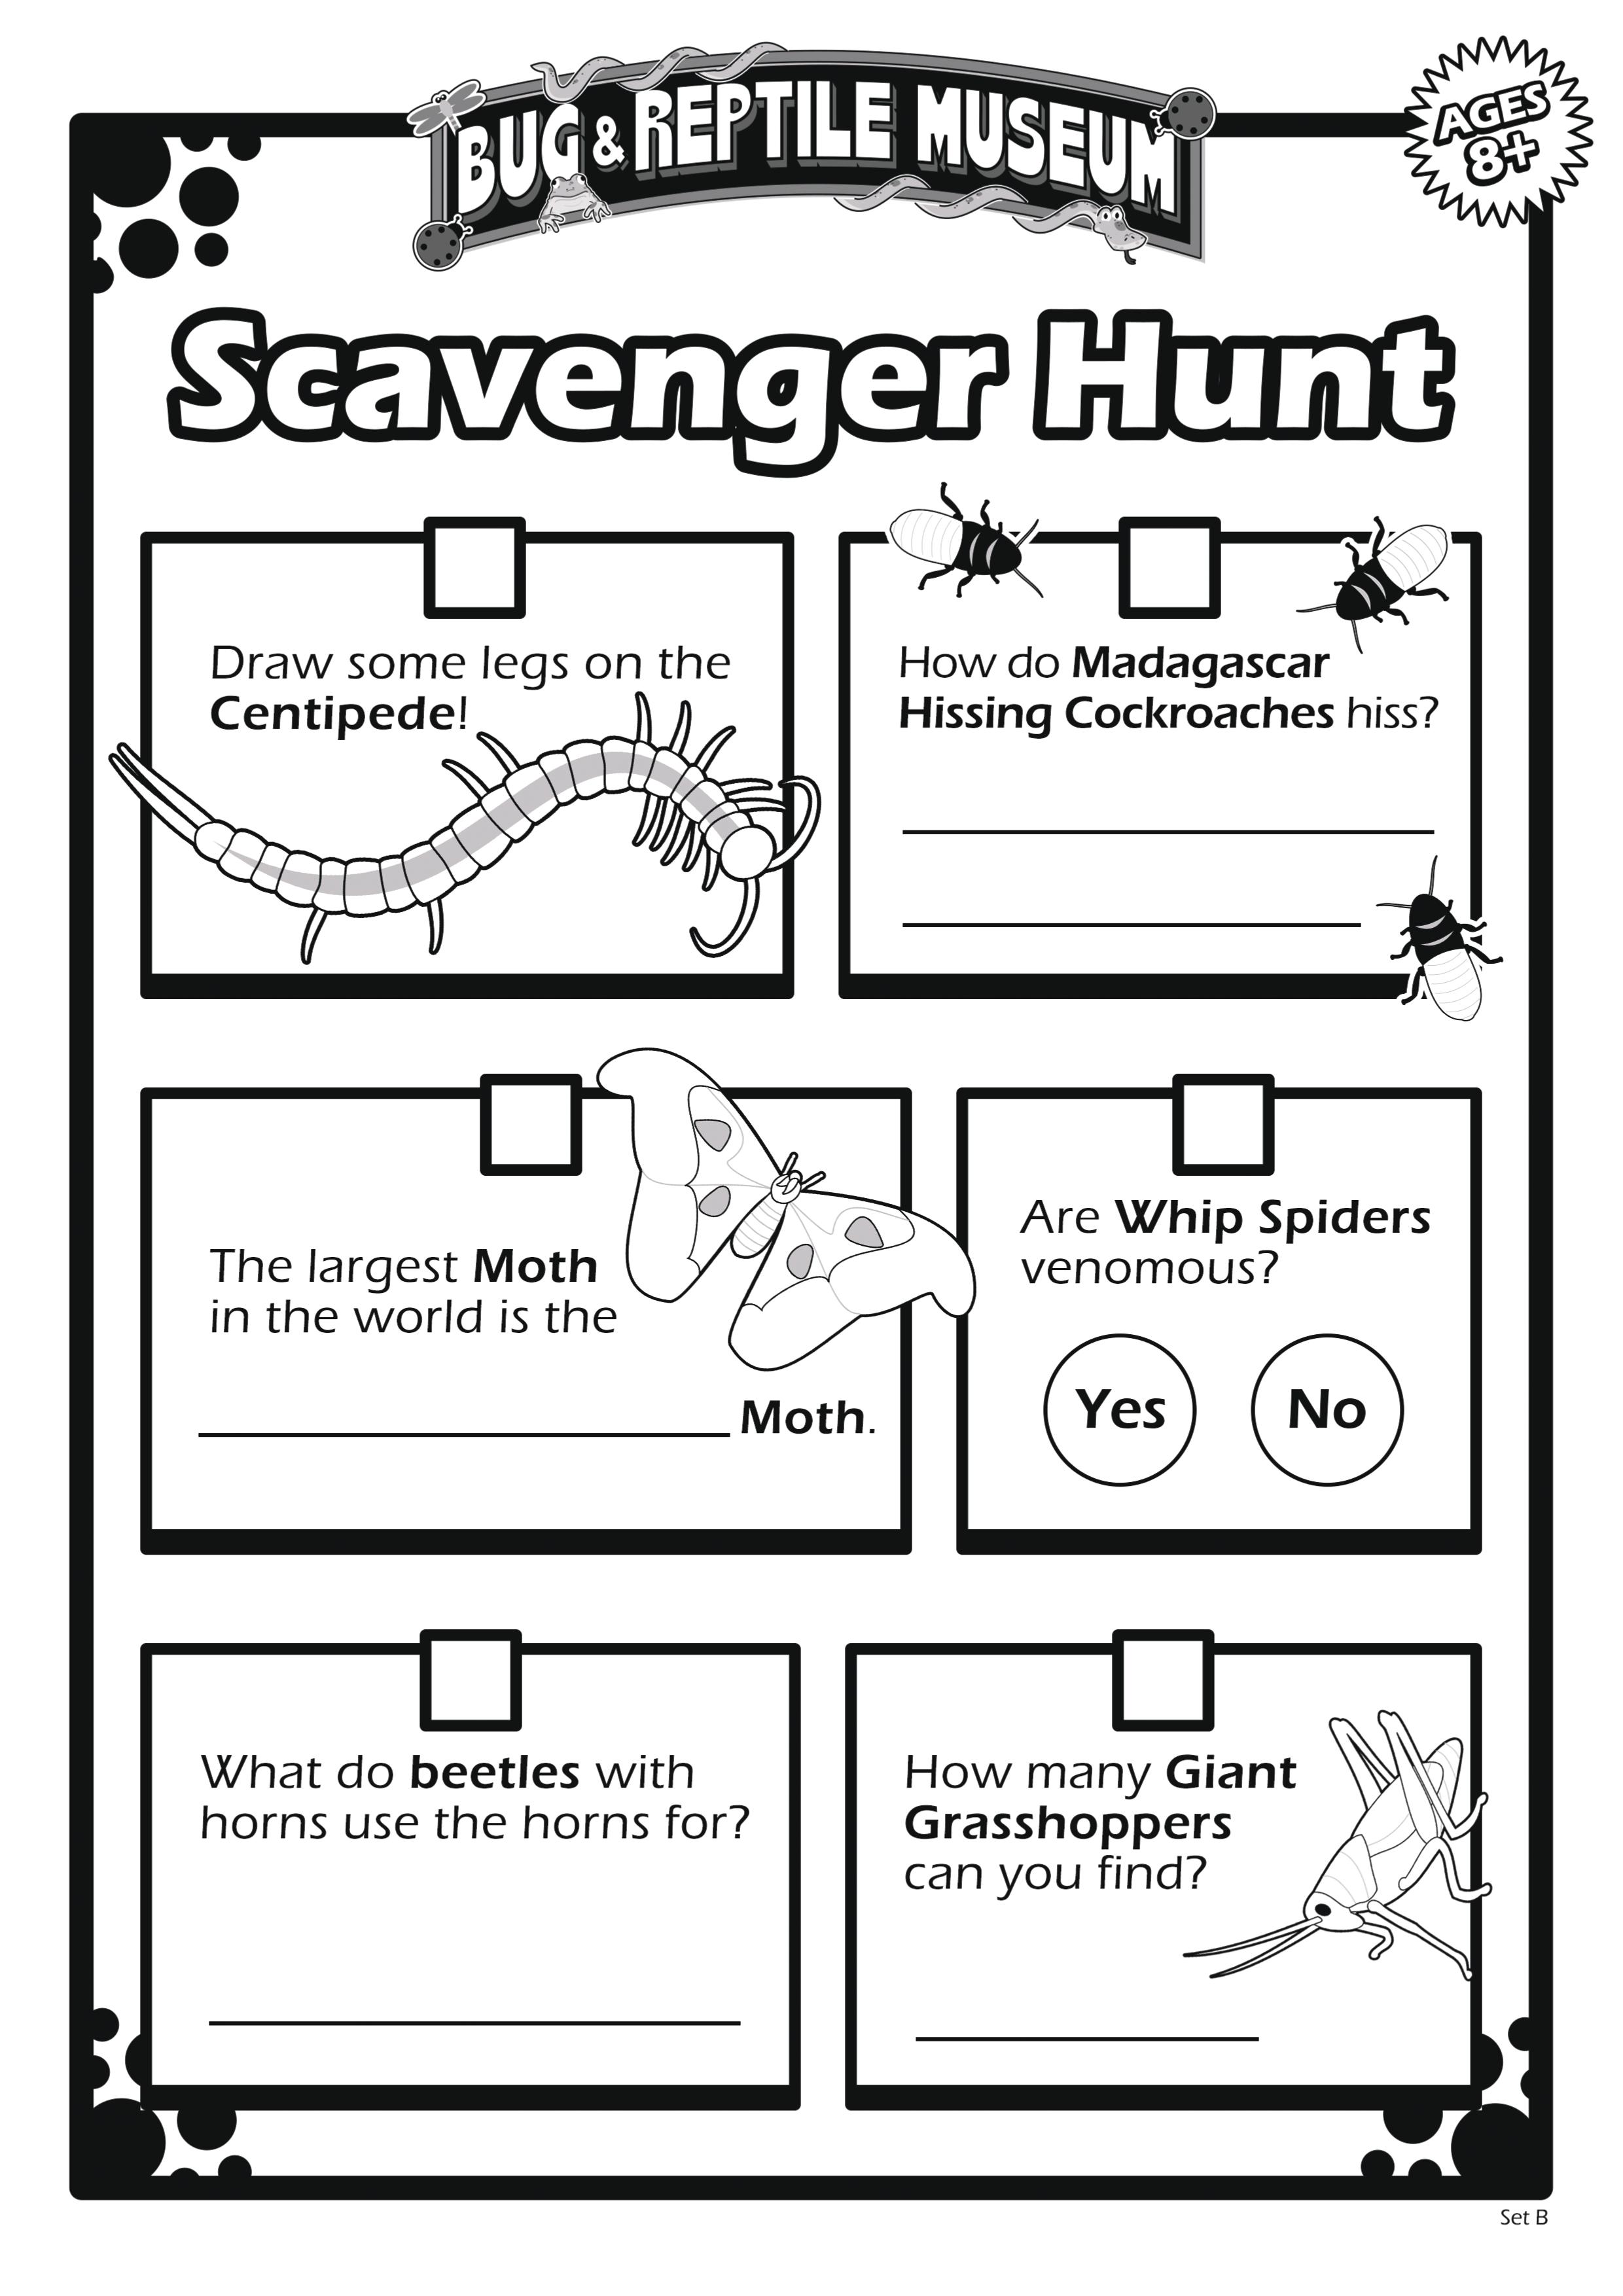 Scavenger Hunt 8B